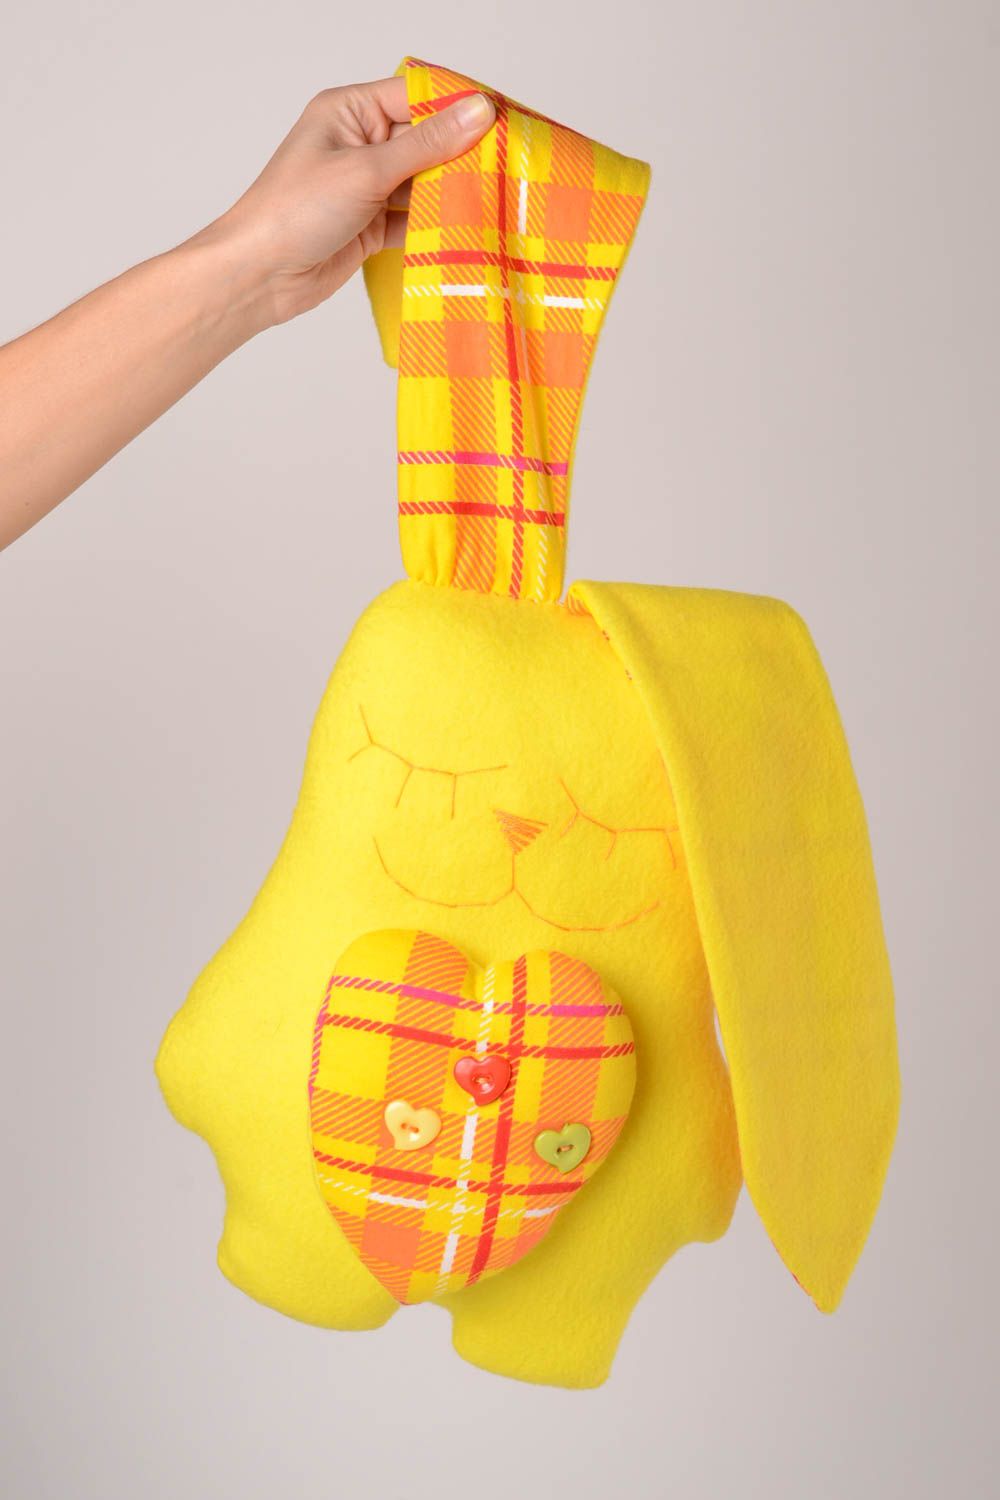 Детская игрушка handmade игрушка из флиса мягкая игрушка заяц спящий желтый фото 2